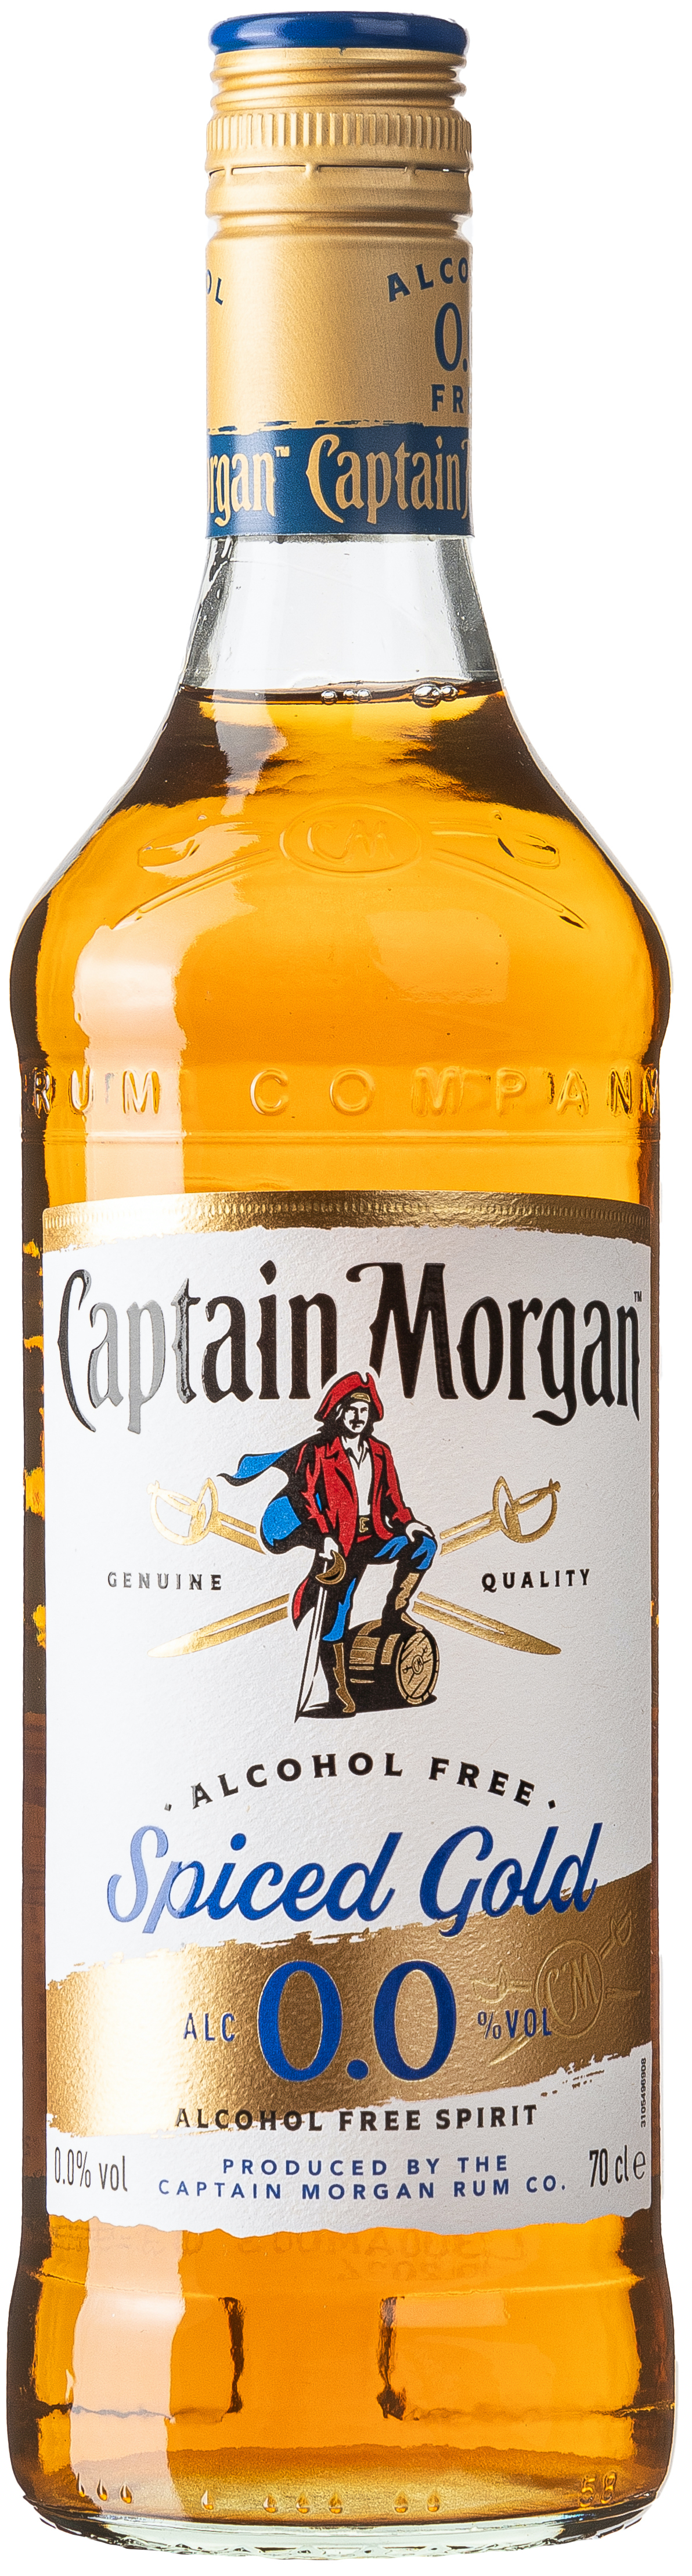 Captain Morgan Spiced Gold Alcohol Free 0,0 vol. 0,7L